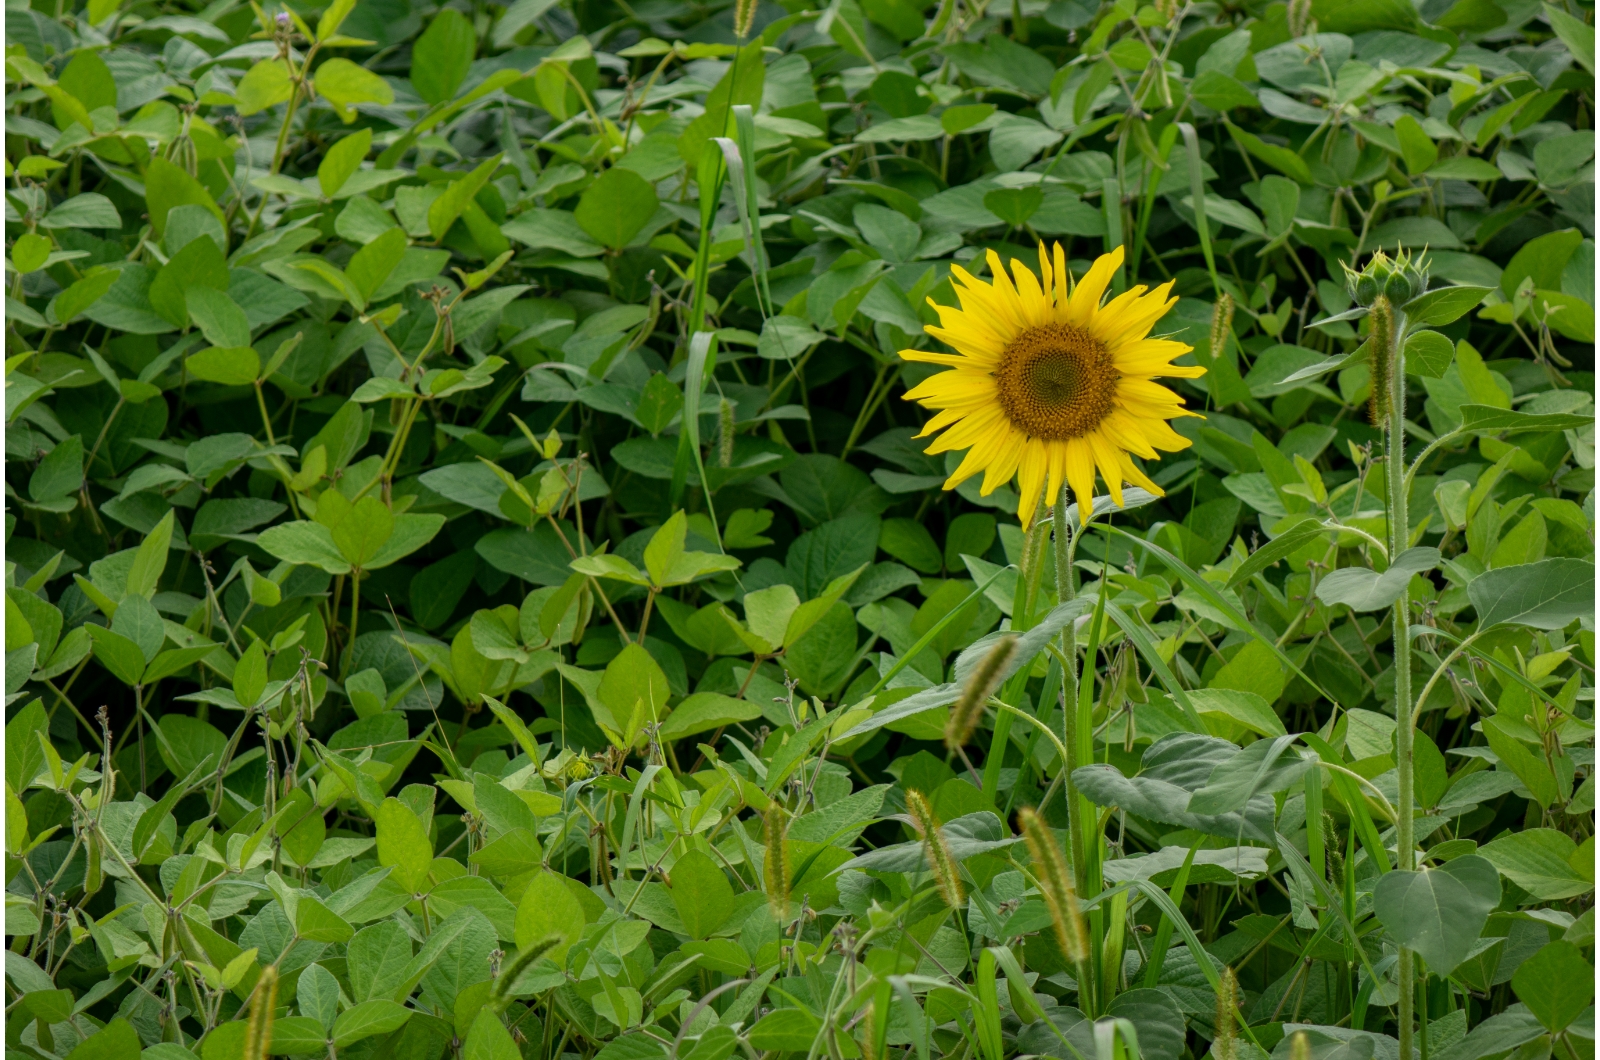 sunflower in a garden